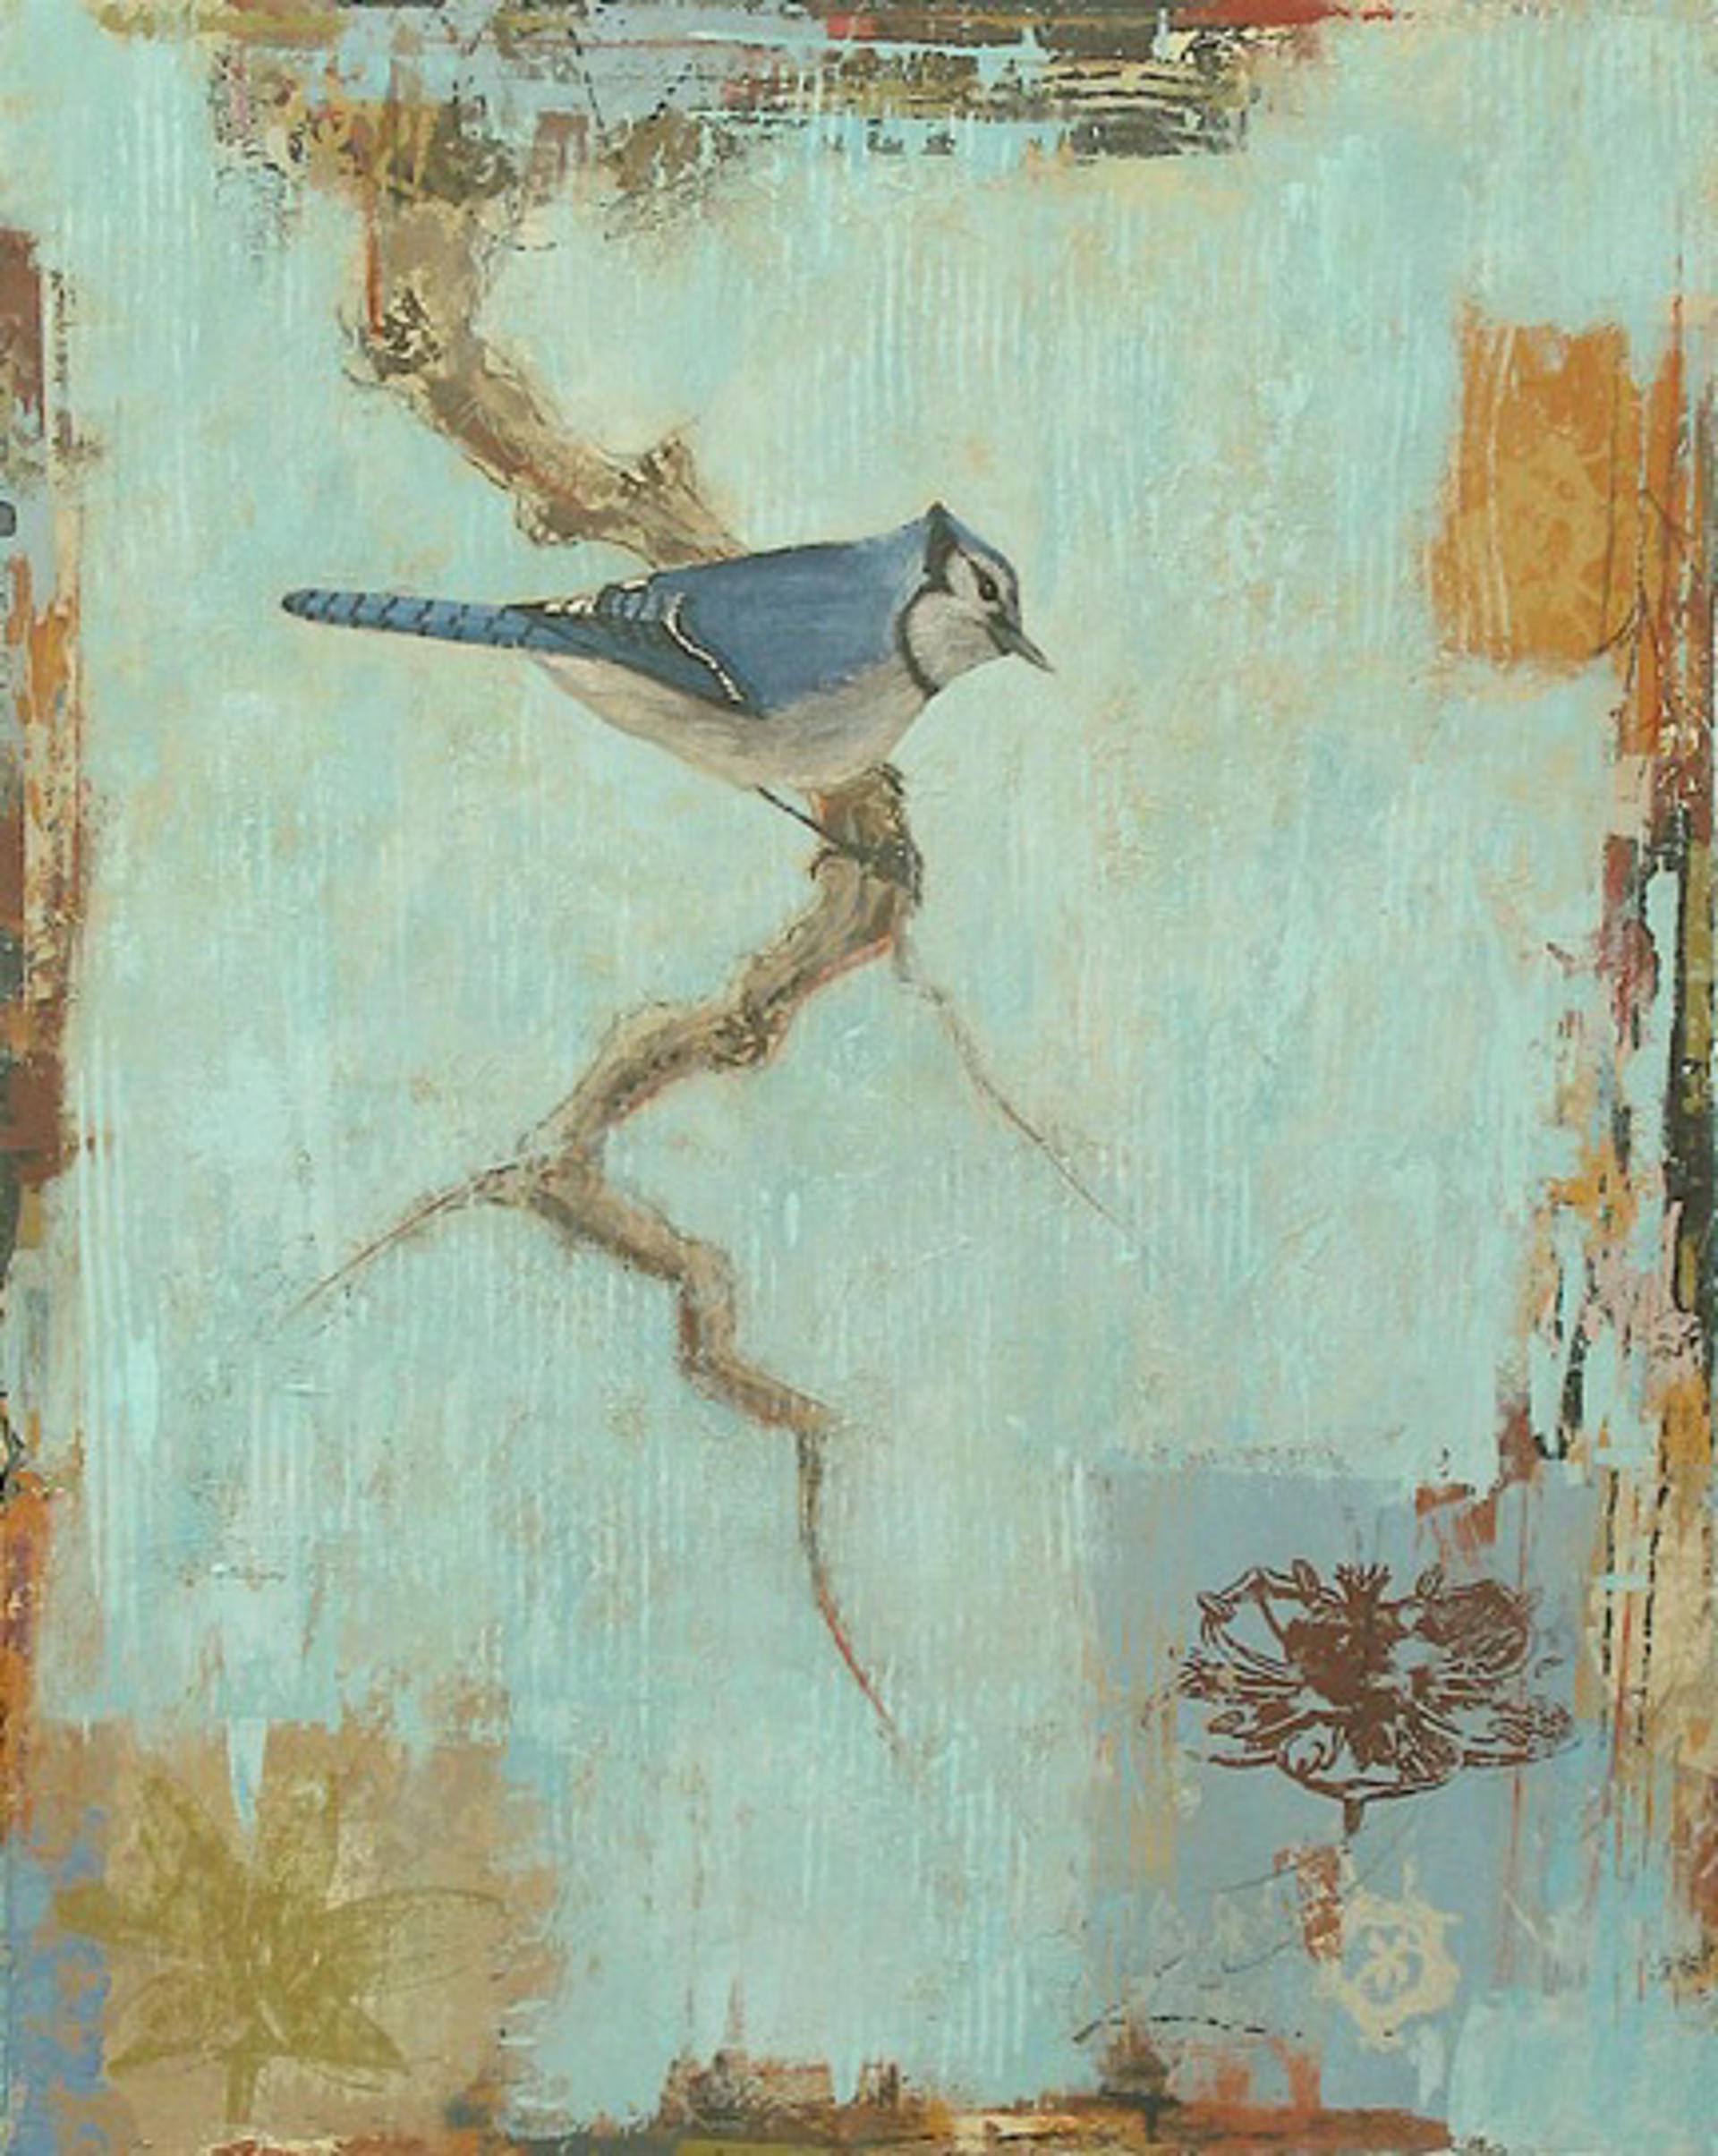 Blue Jay (#2) by Paul Brigham